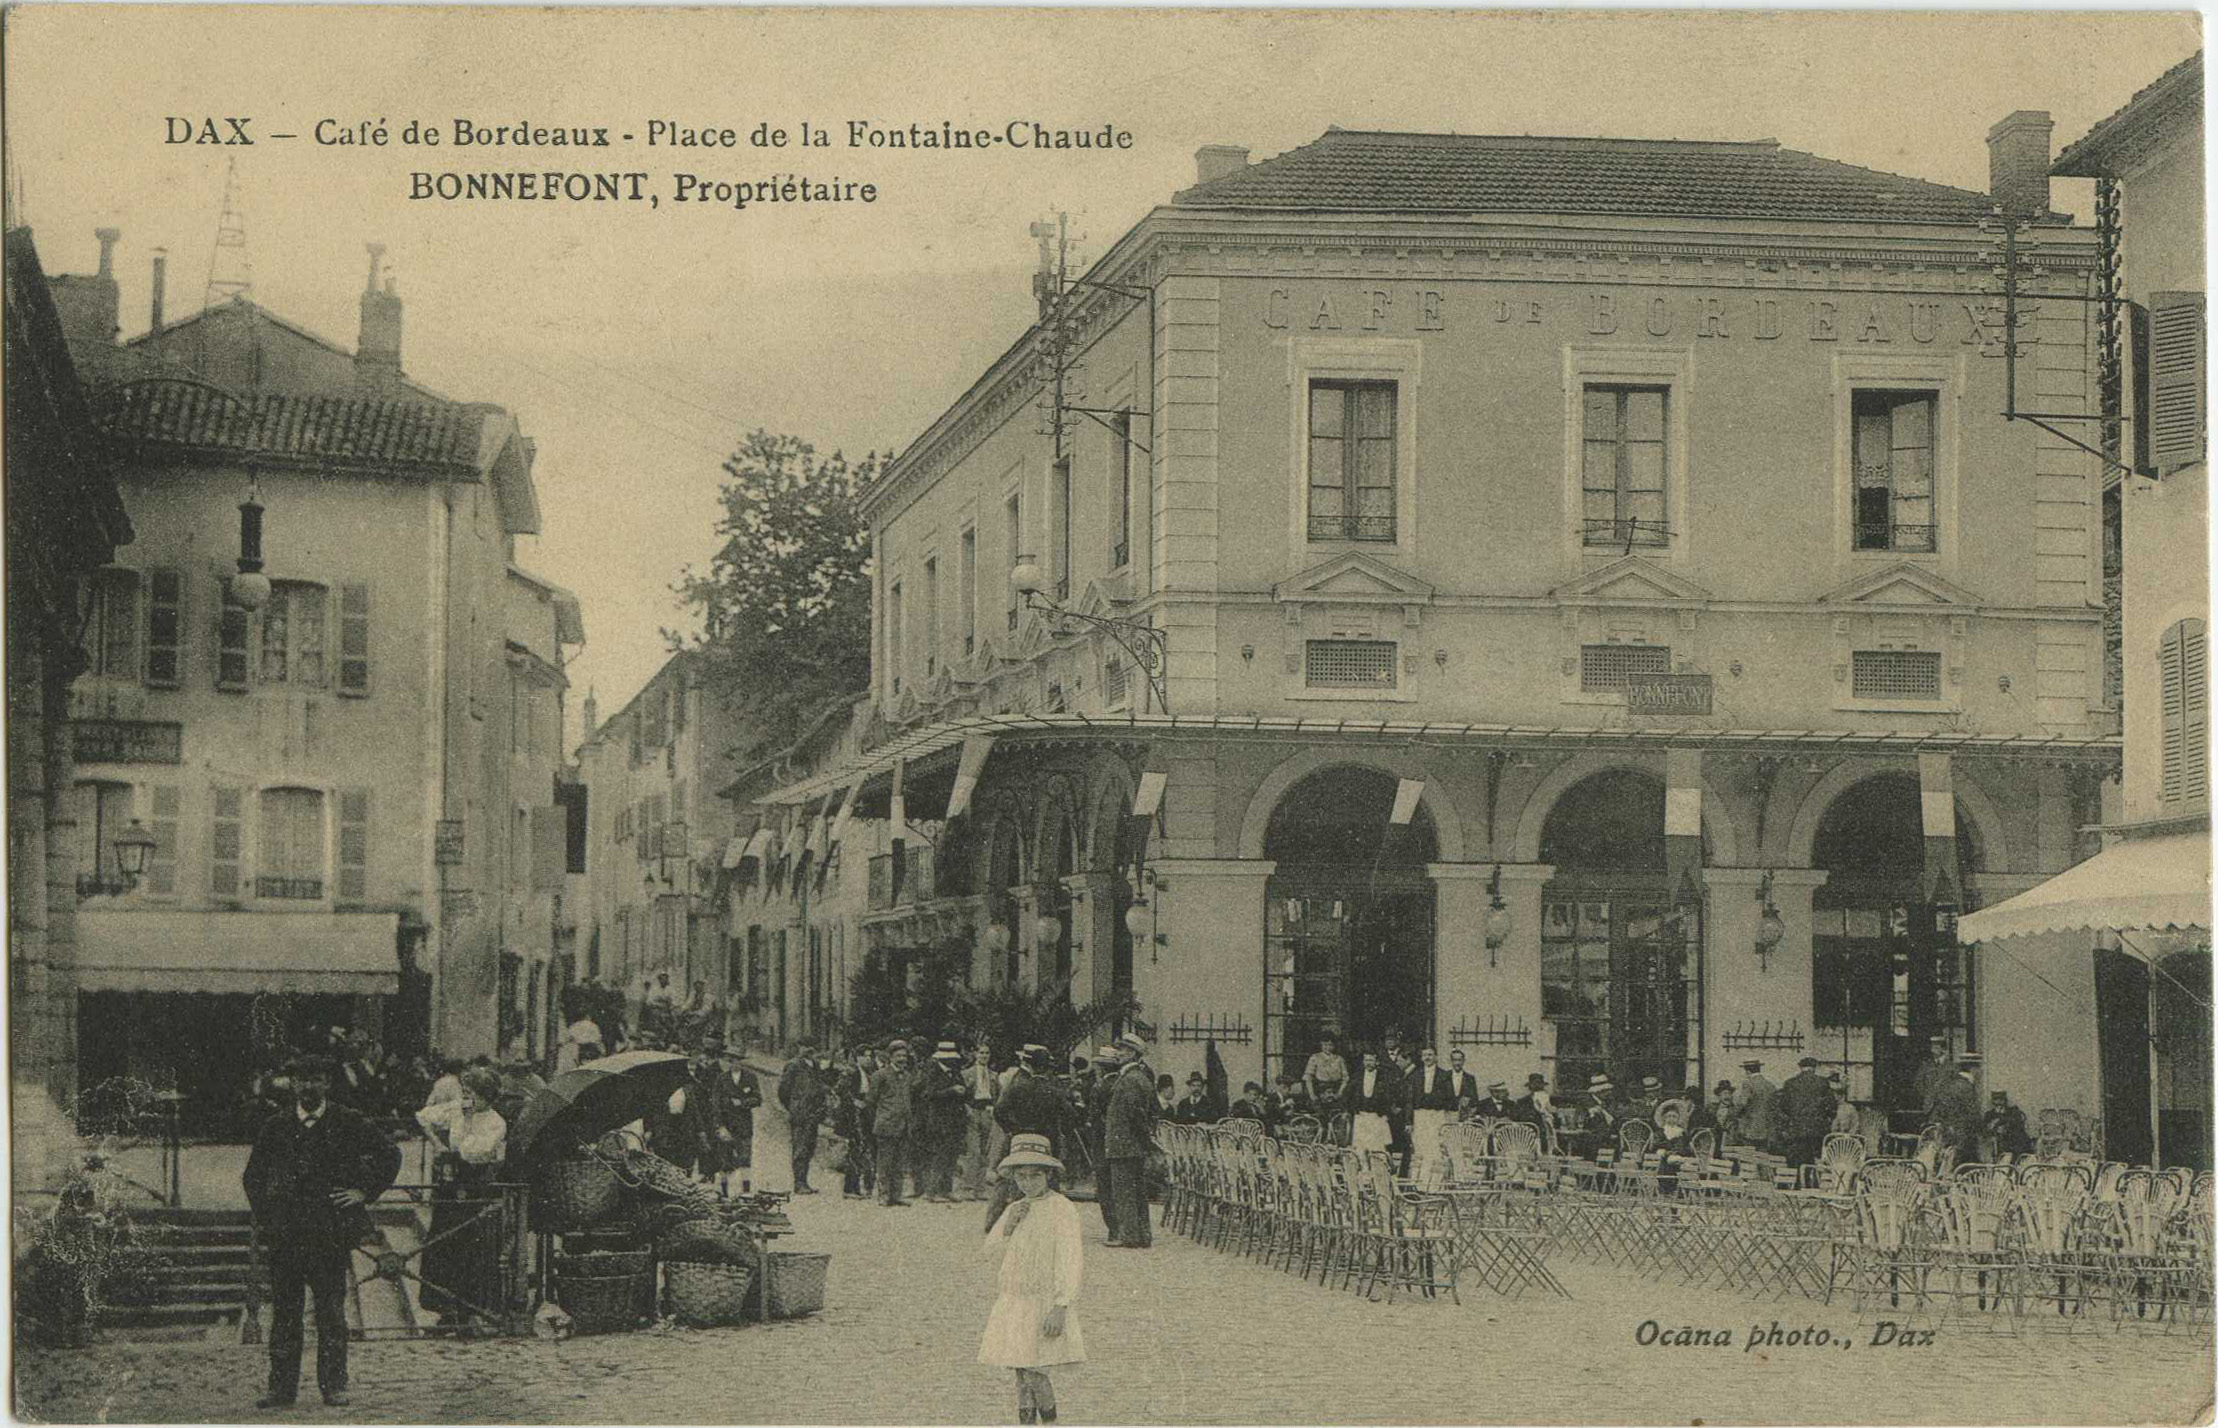 Dax - Café de Bordeaux - Place de la Fontaine-Chaude - BONNEFONT, Propriétaire